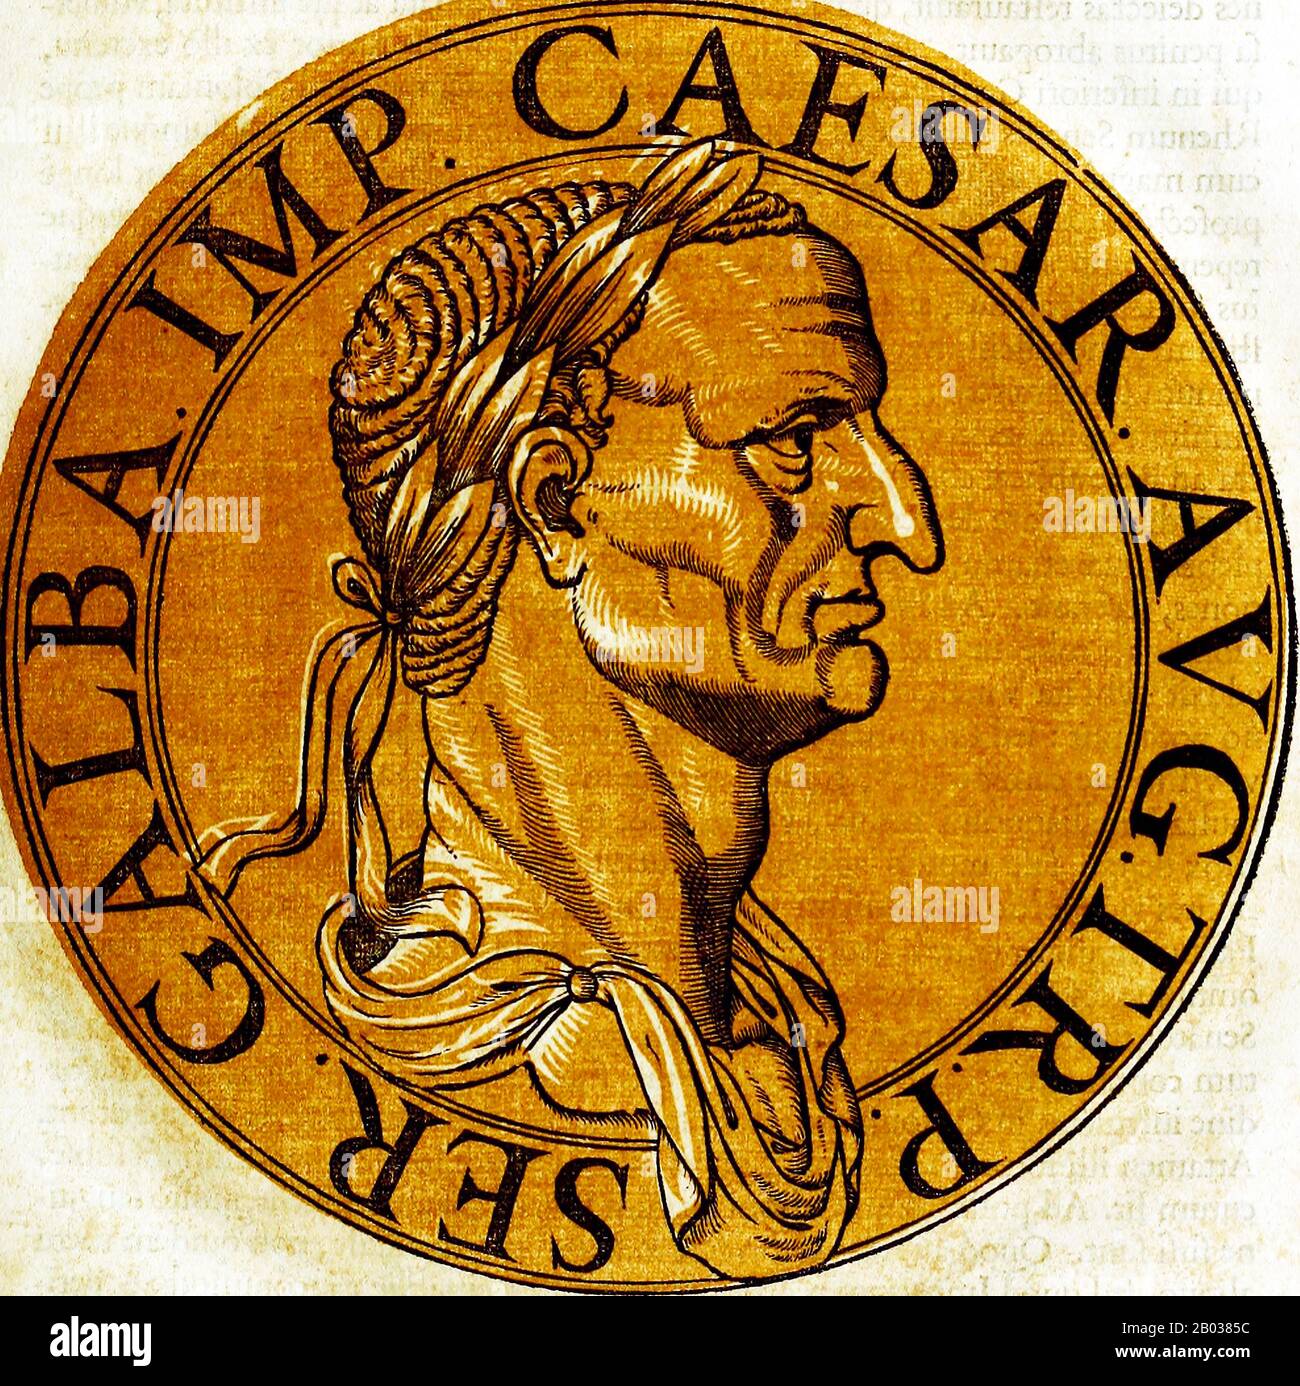 Der gebürtige Servius Sulpicius Galba stammte aus einer adligen und wohlhabenden Familie, obwohl er von Geburt an keine Verbindung und nur eine sehr abgelegene Verbindung durch die Adoption in eine der Julio-Claudian-Dynastie hatte. Galba weigerte sich, von Freunden ermutigt zu werden, nach Caligulas Ermordung ein Angebot für das Reich zu machen, diente Claudius loyal und lebte für den Großteil von Neros Herrschaft im Ruhestand. 68 v. Chr. wurde er jedoch über Neros Absicht informiert, ihn töten zu lassen, und er entsetzte sich von Nero, um sich selbst zu retten. Nach Neros Selbstmord wurde Galba zum "Cäsar" ernannt und tötete viele Soldaten auf seinem Weg nach Rom, um dem zu danken Stockfoto